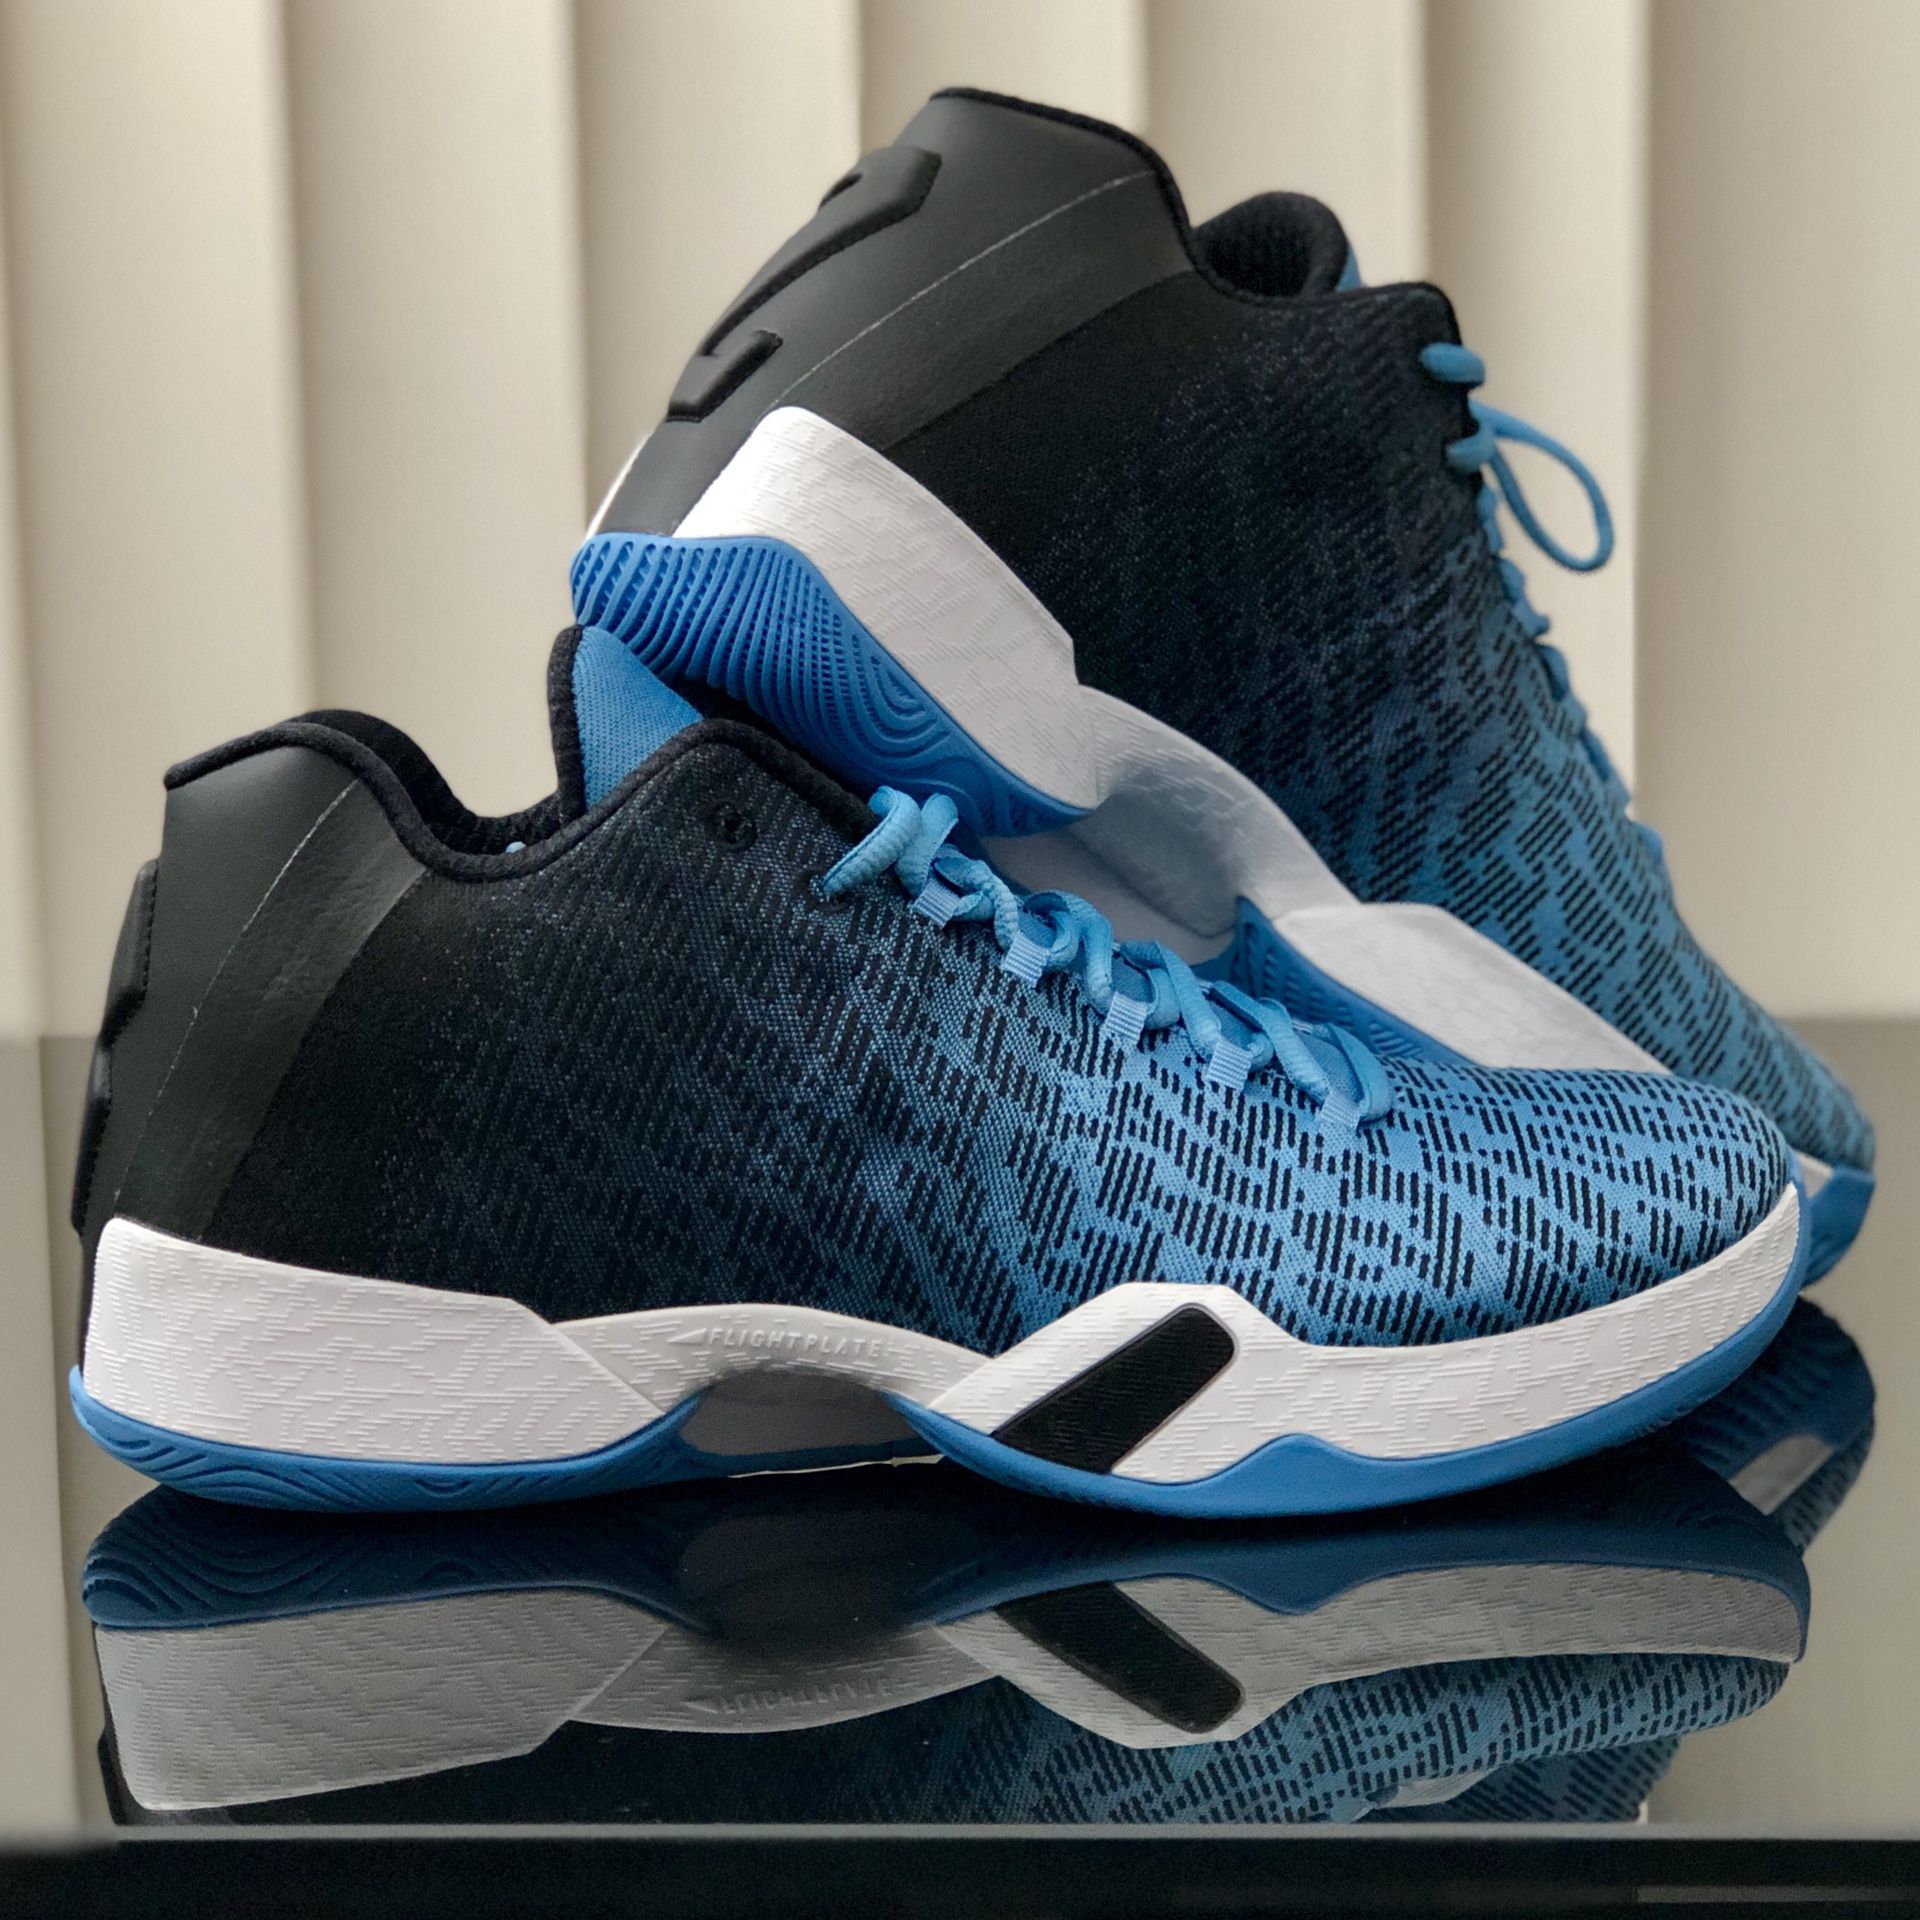 Nike Jordan 29 Low UNC basketball shoe [size 9.5] for Sale in FL - OfferUp